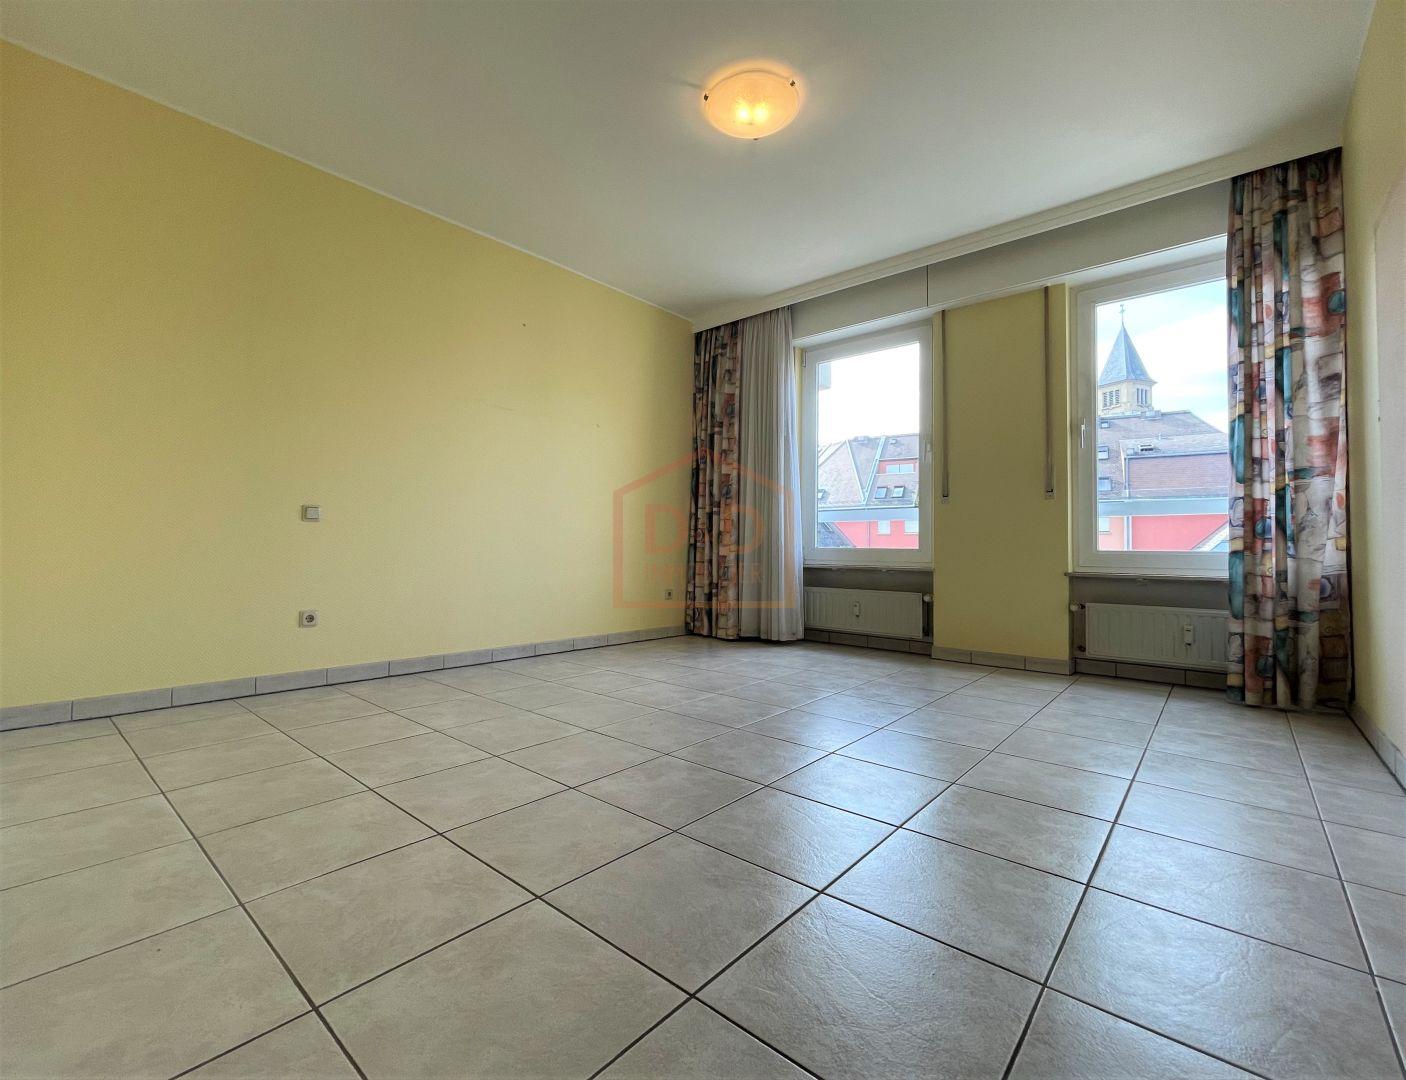 Appartement à Schifflange, 90 m², 2 chambres, 1 salle de bain, 745 000 €